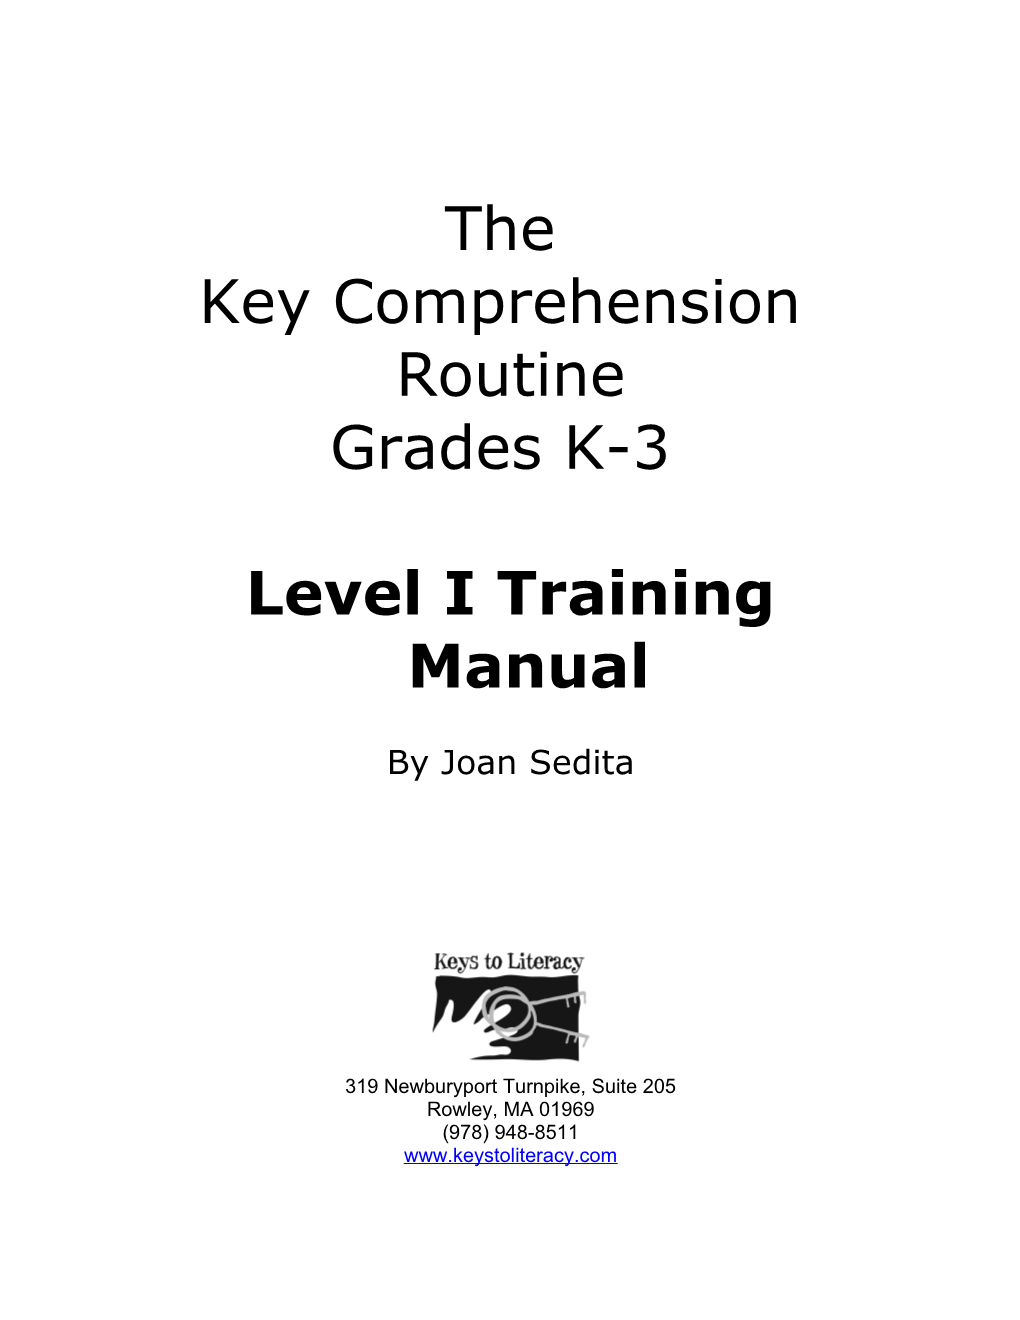 Level I Training Manual